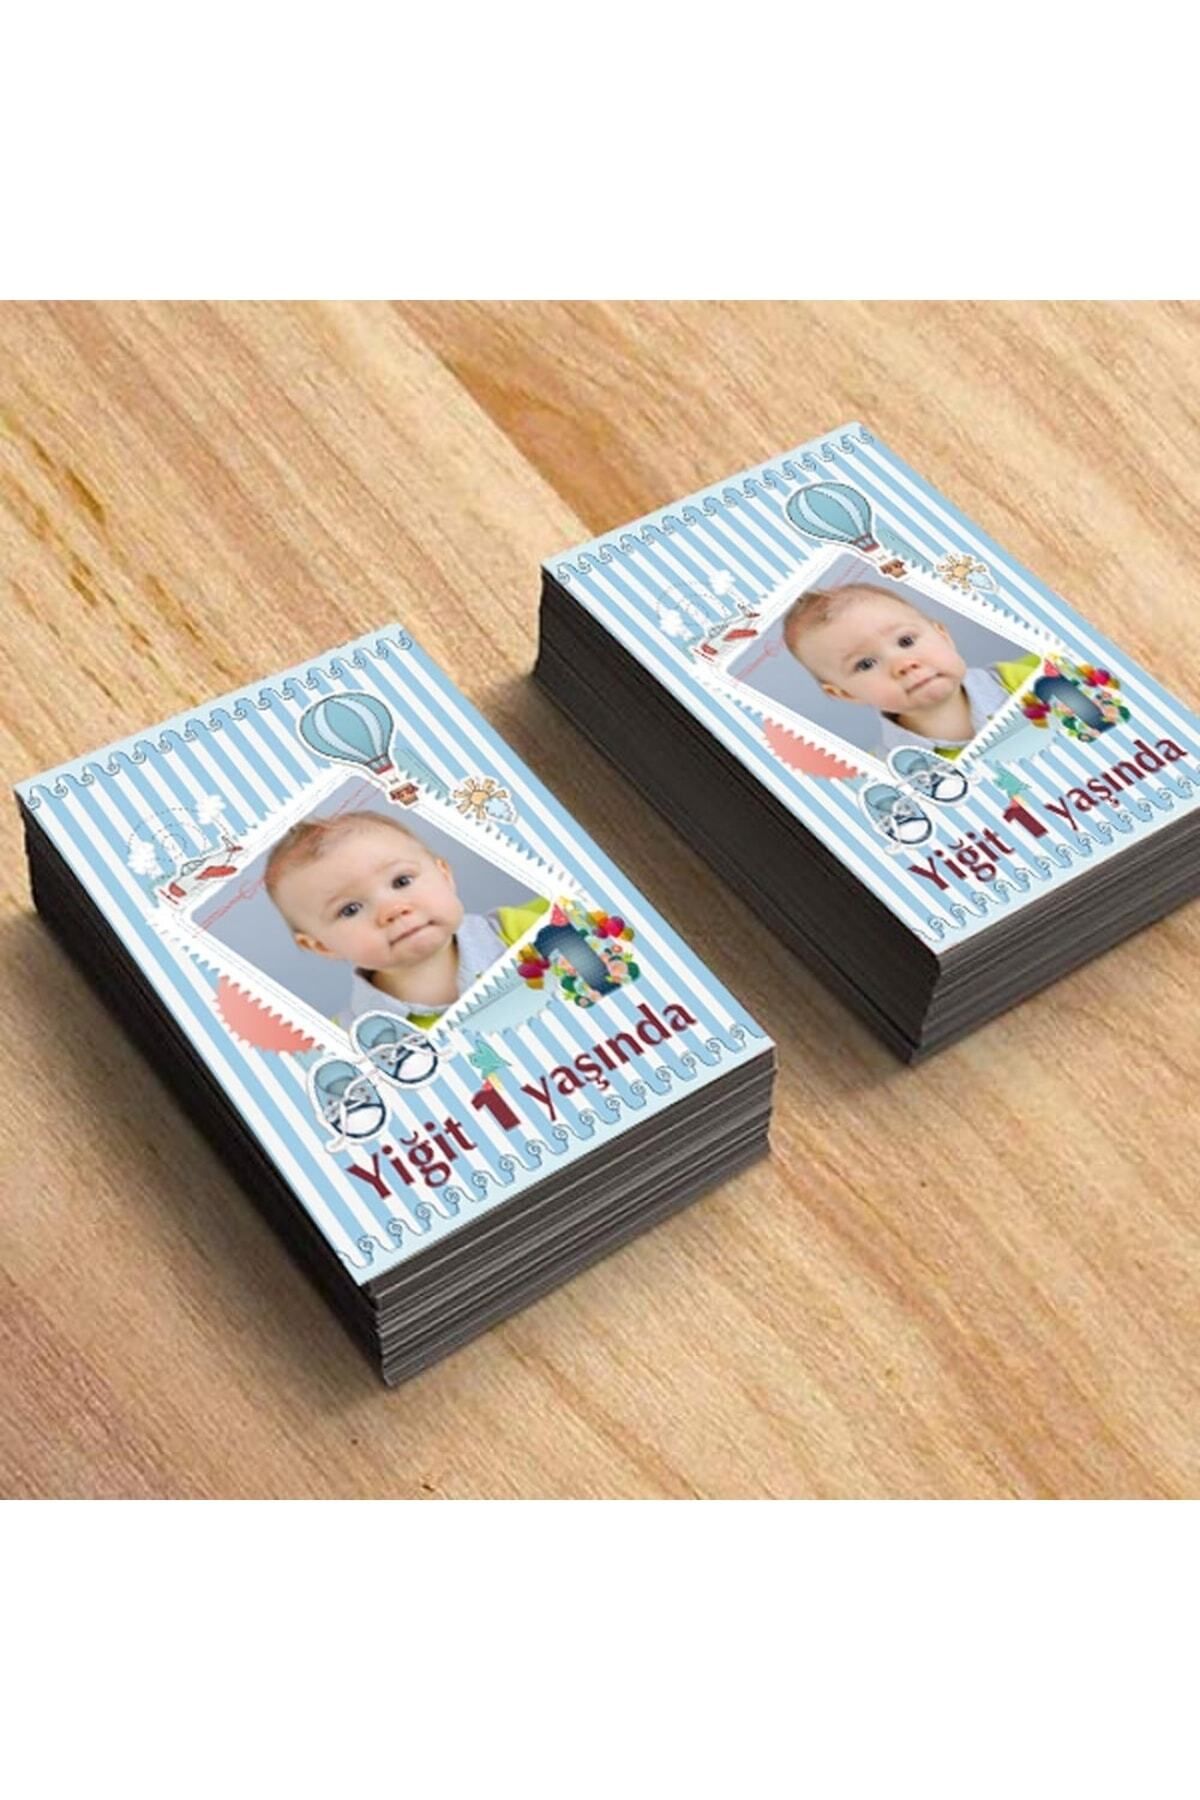 partimira 1 Yaş Doğum Günü Magneti Bebek Magnetleri Resimli Bebek Magnet 18 Adet